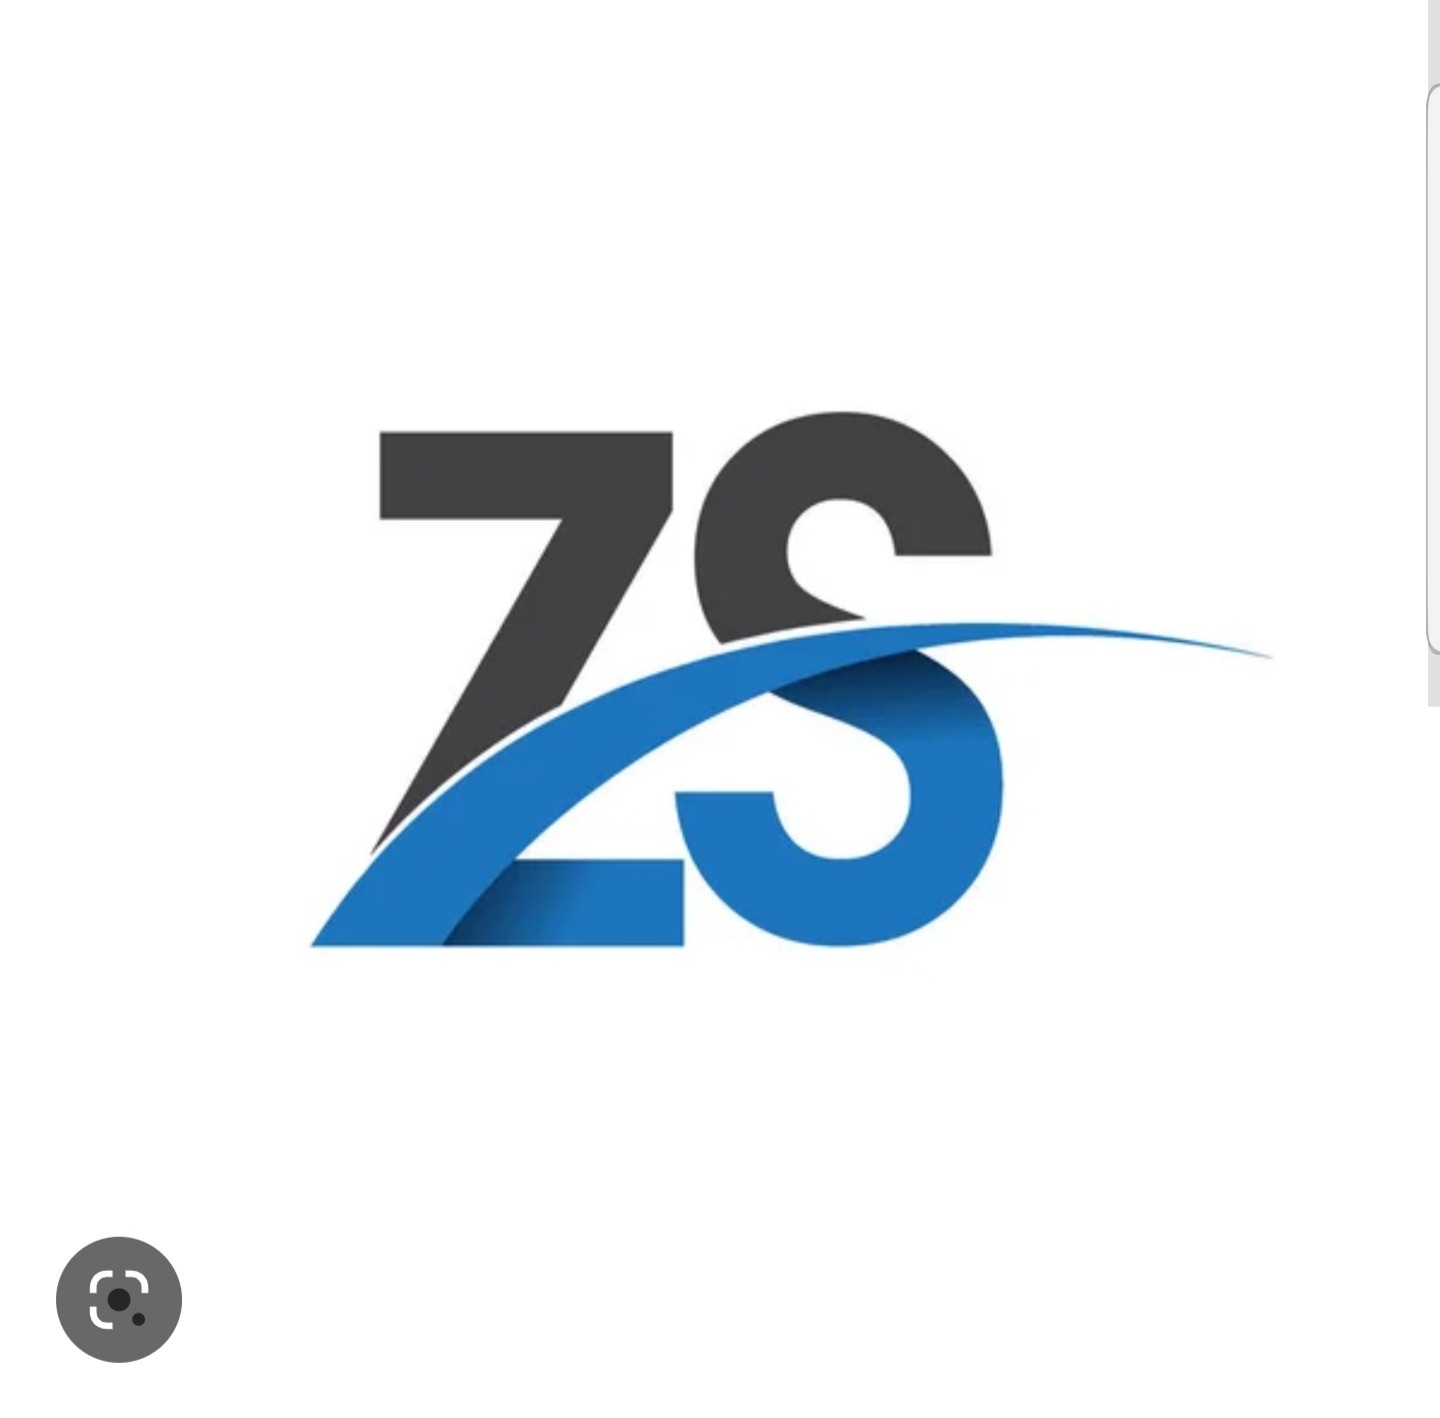 Zs man and van logo